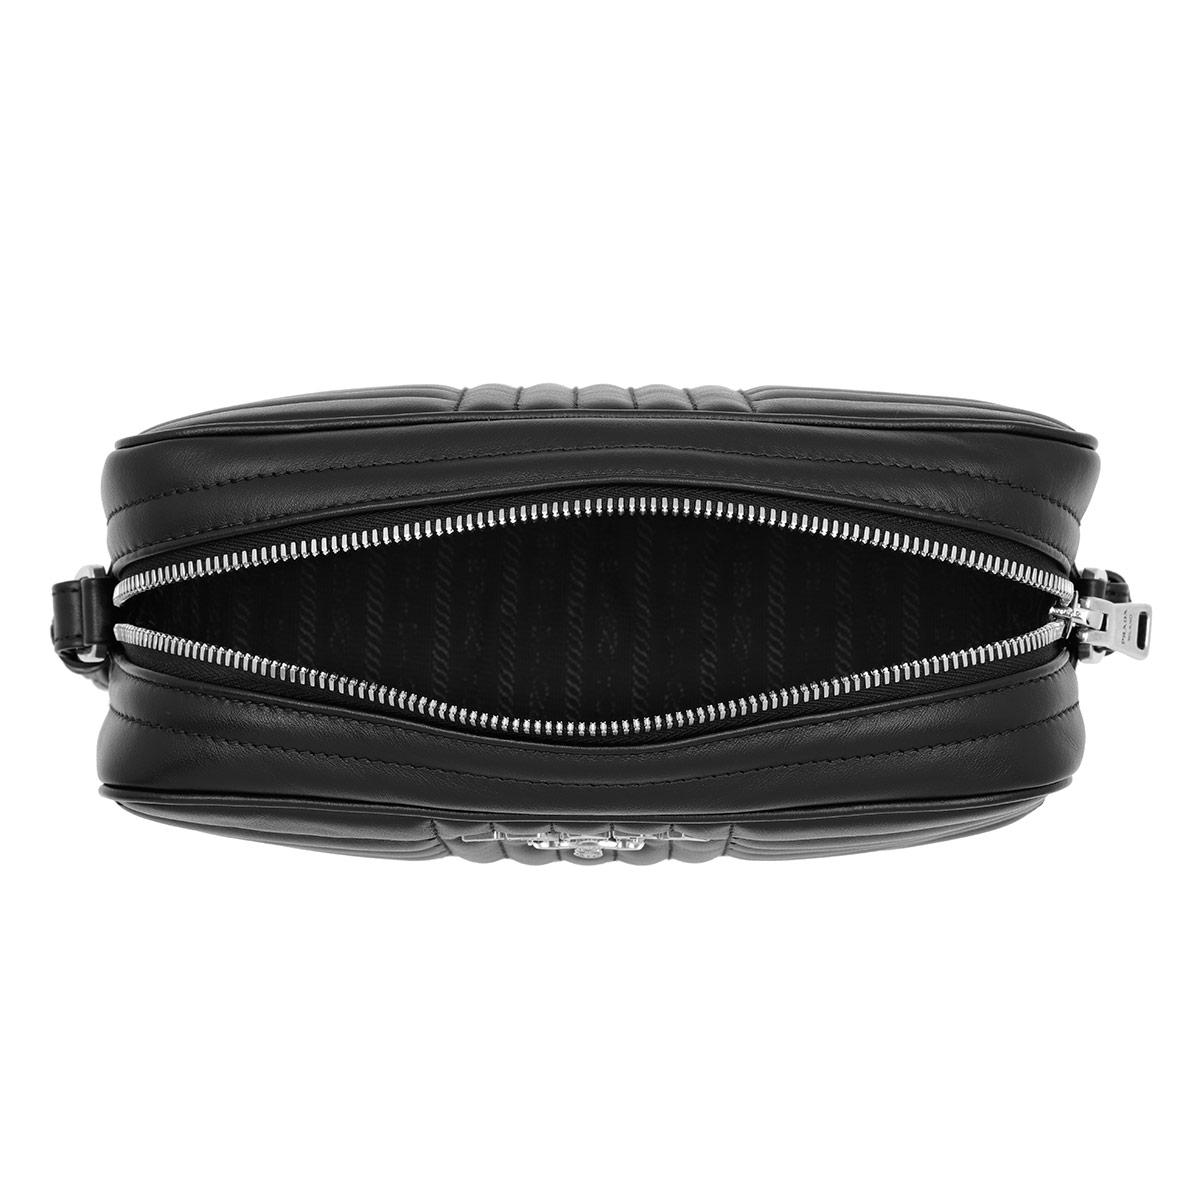 Prada Diagramme Camera Bag in Black